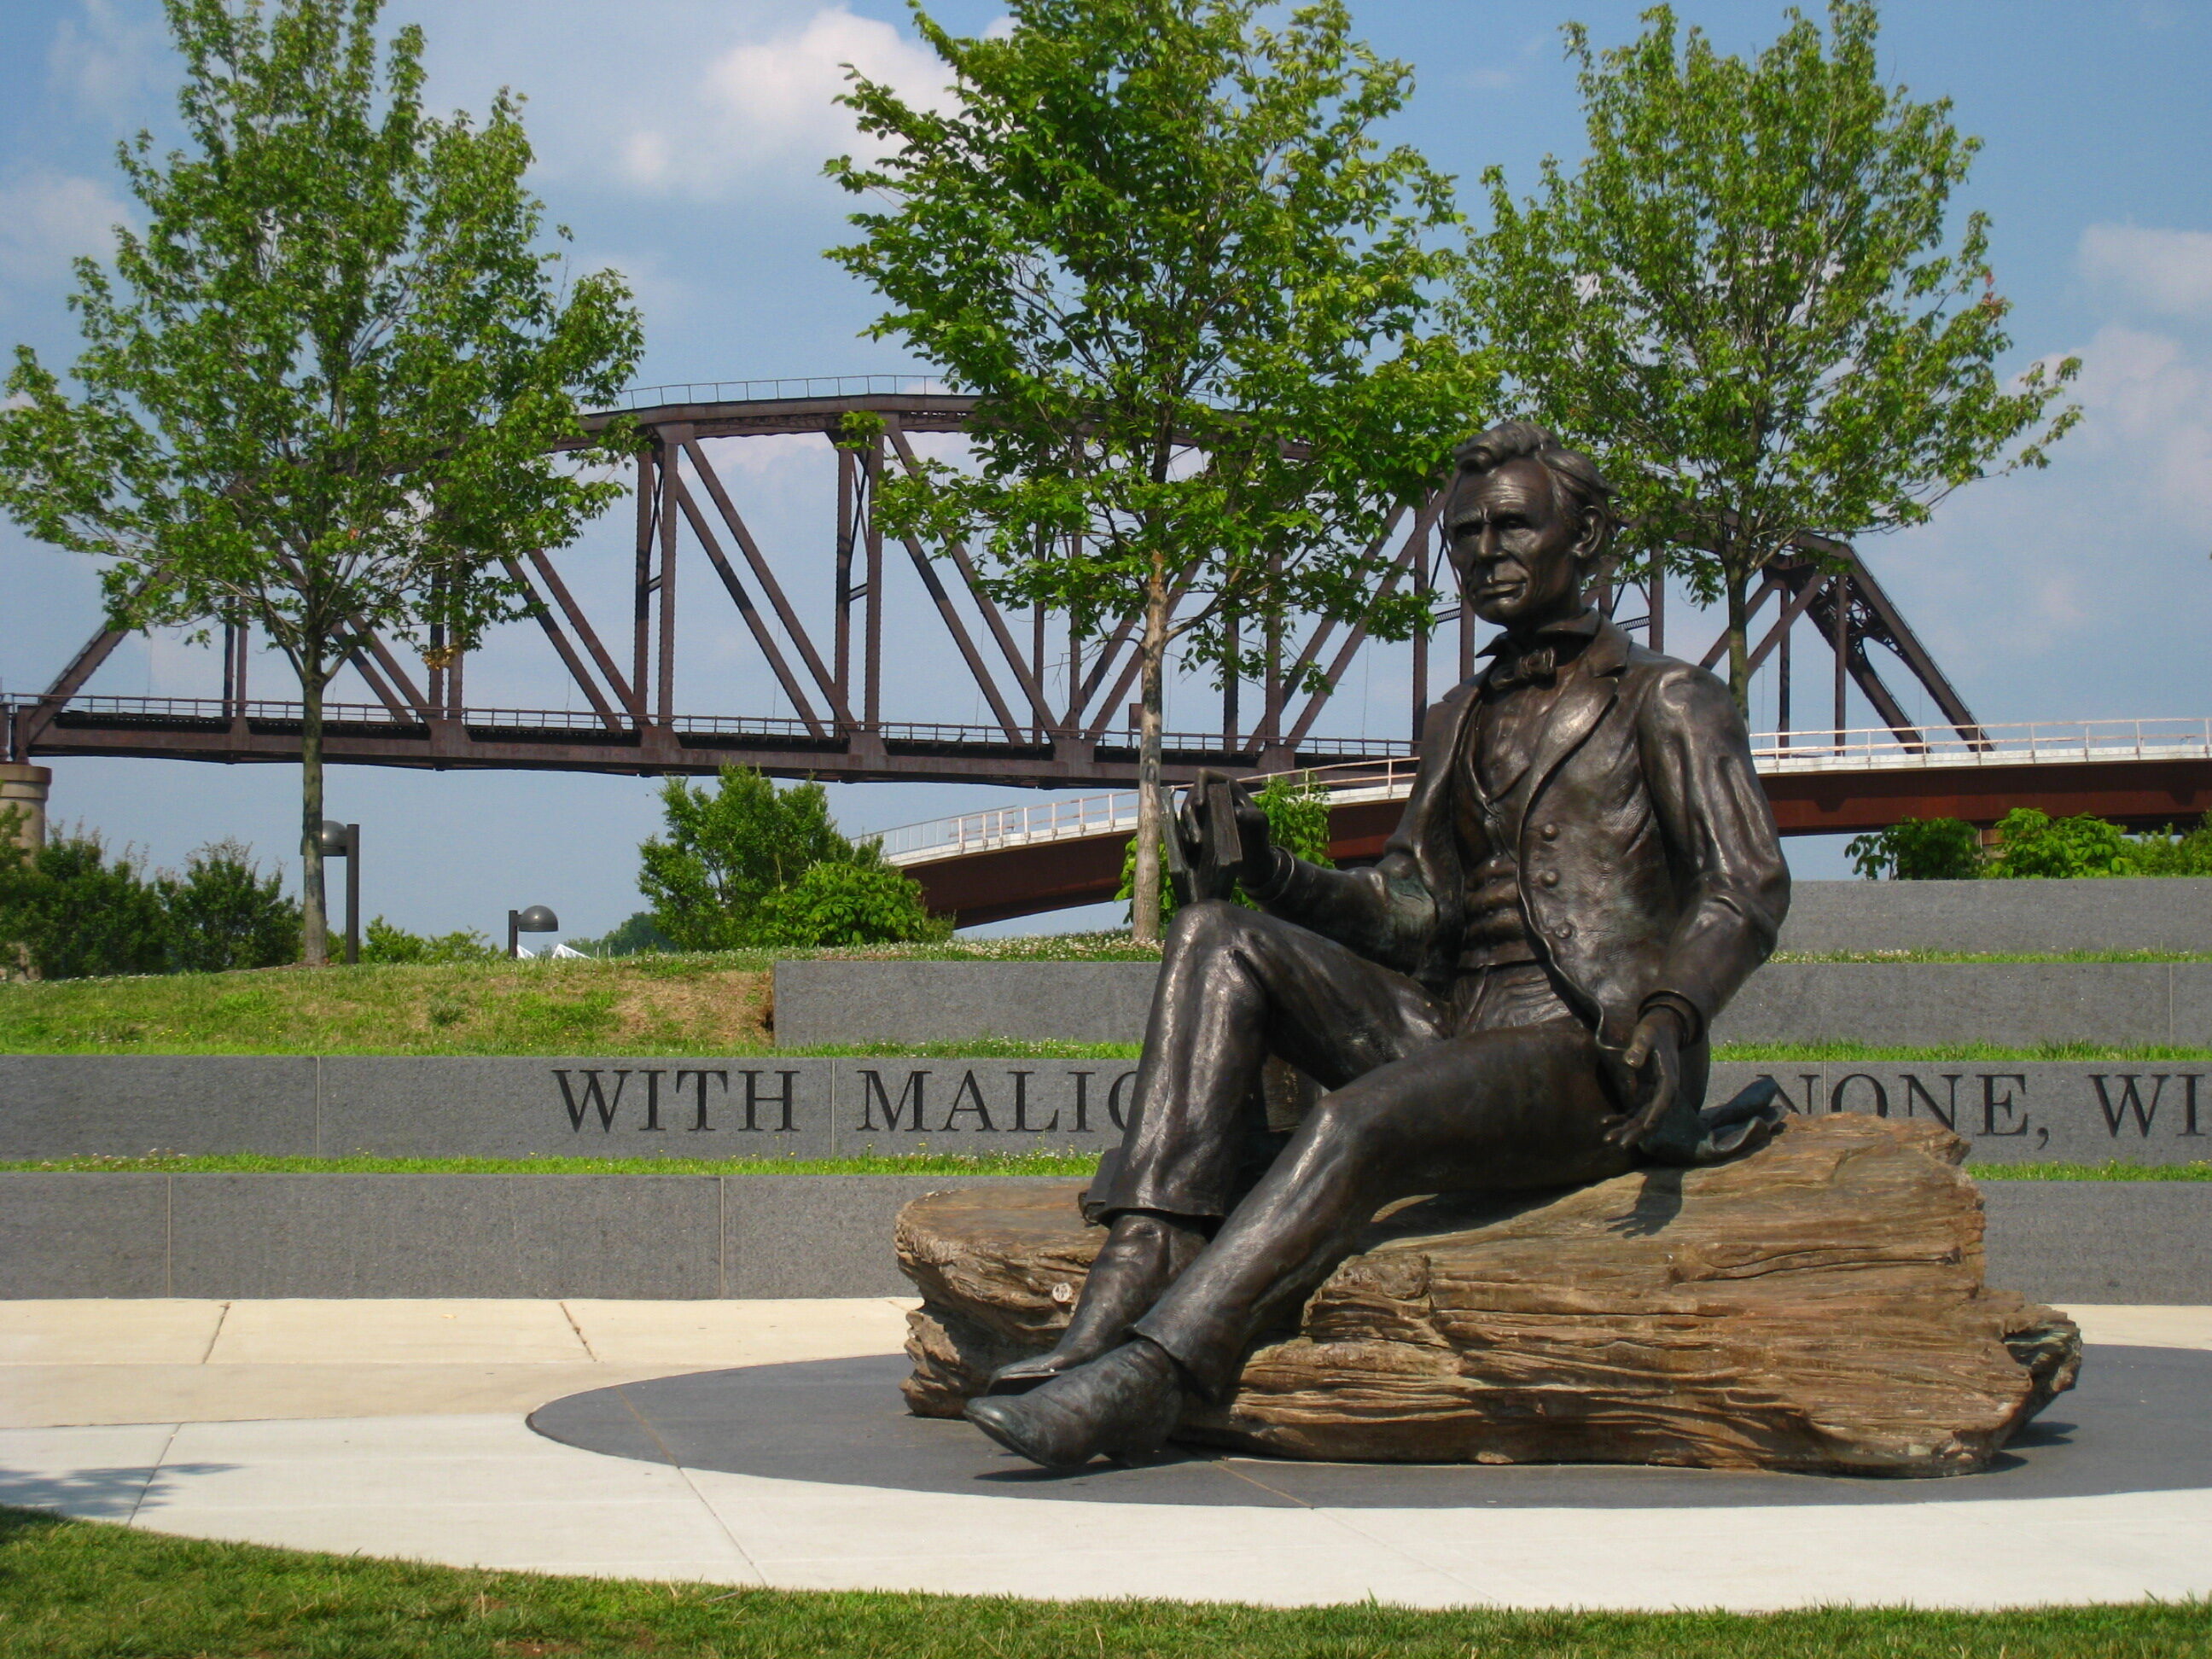 Abraham Lincoln Statue by Sculptor Ed Hamilton